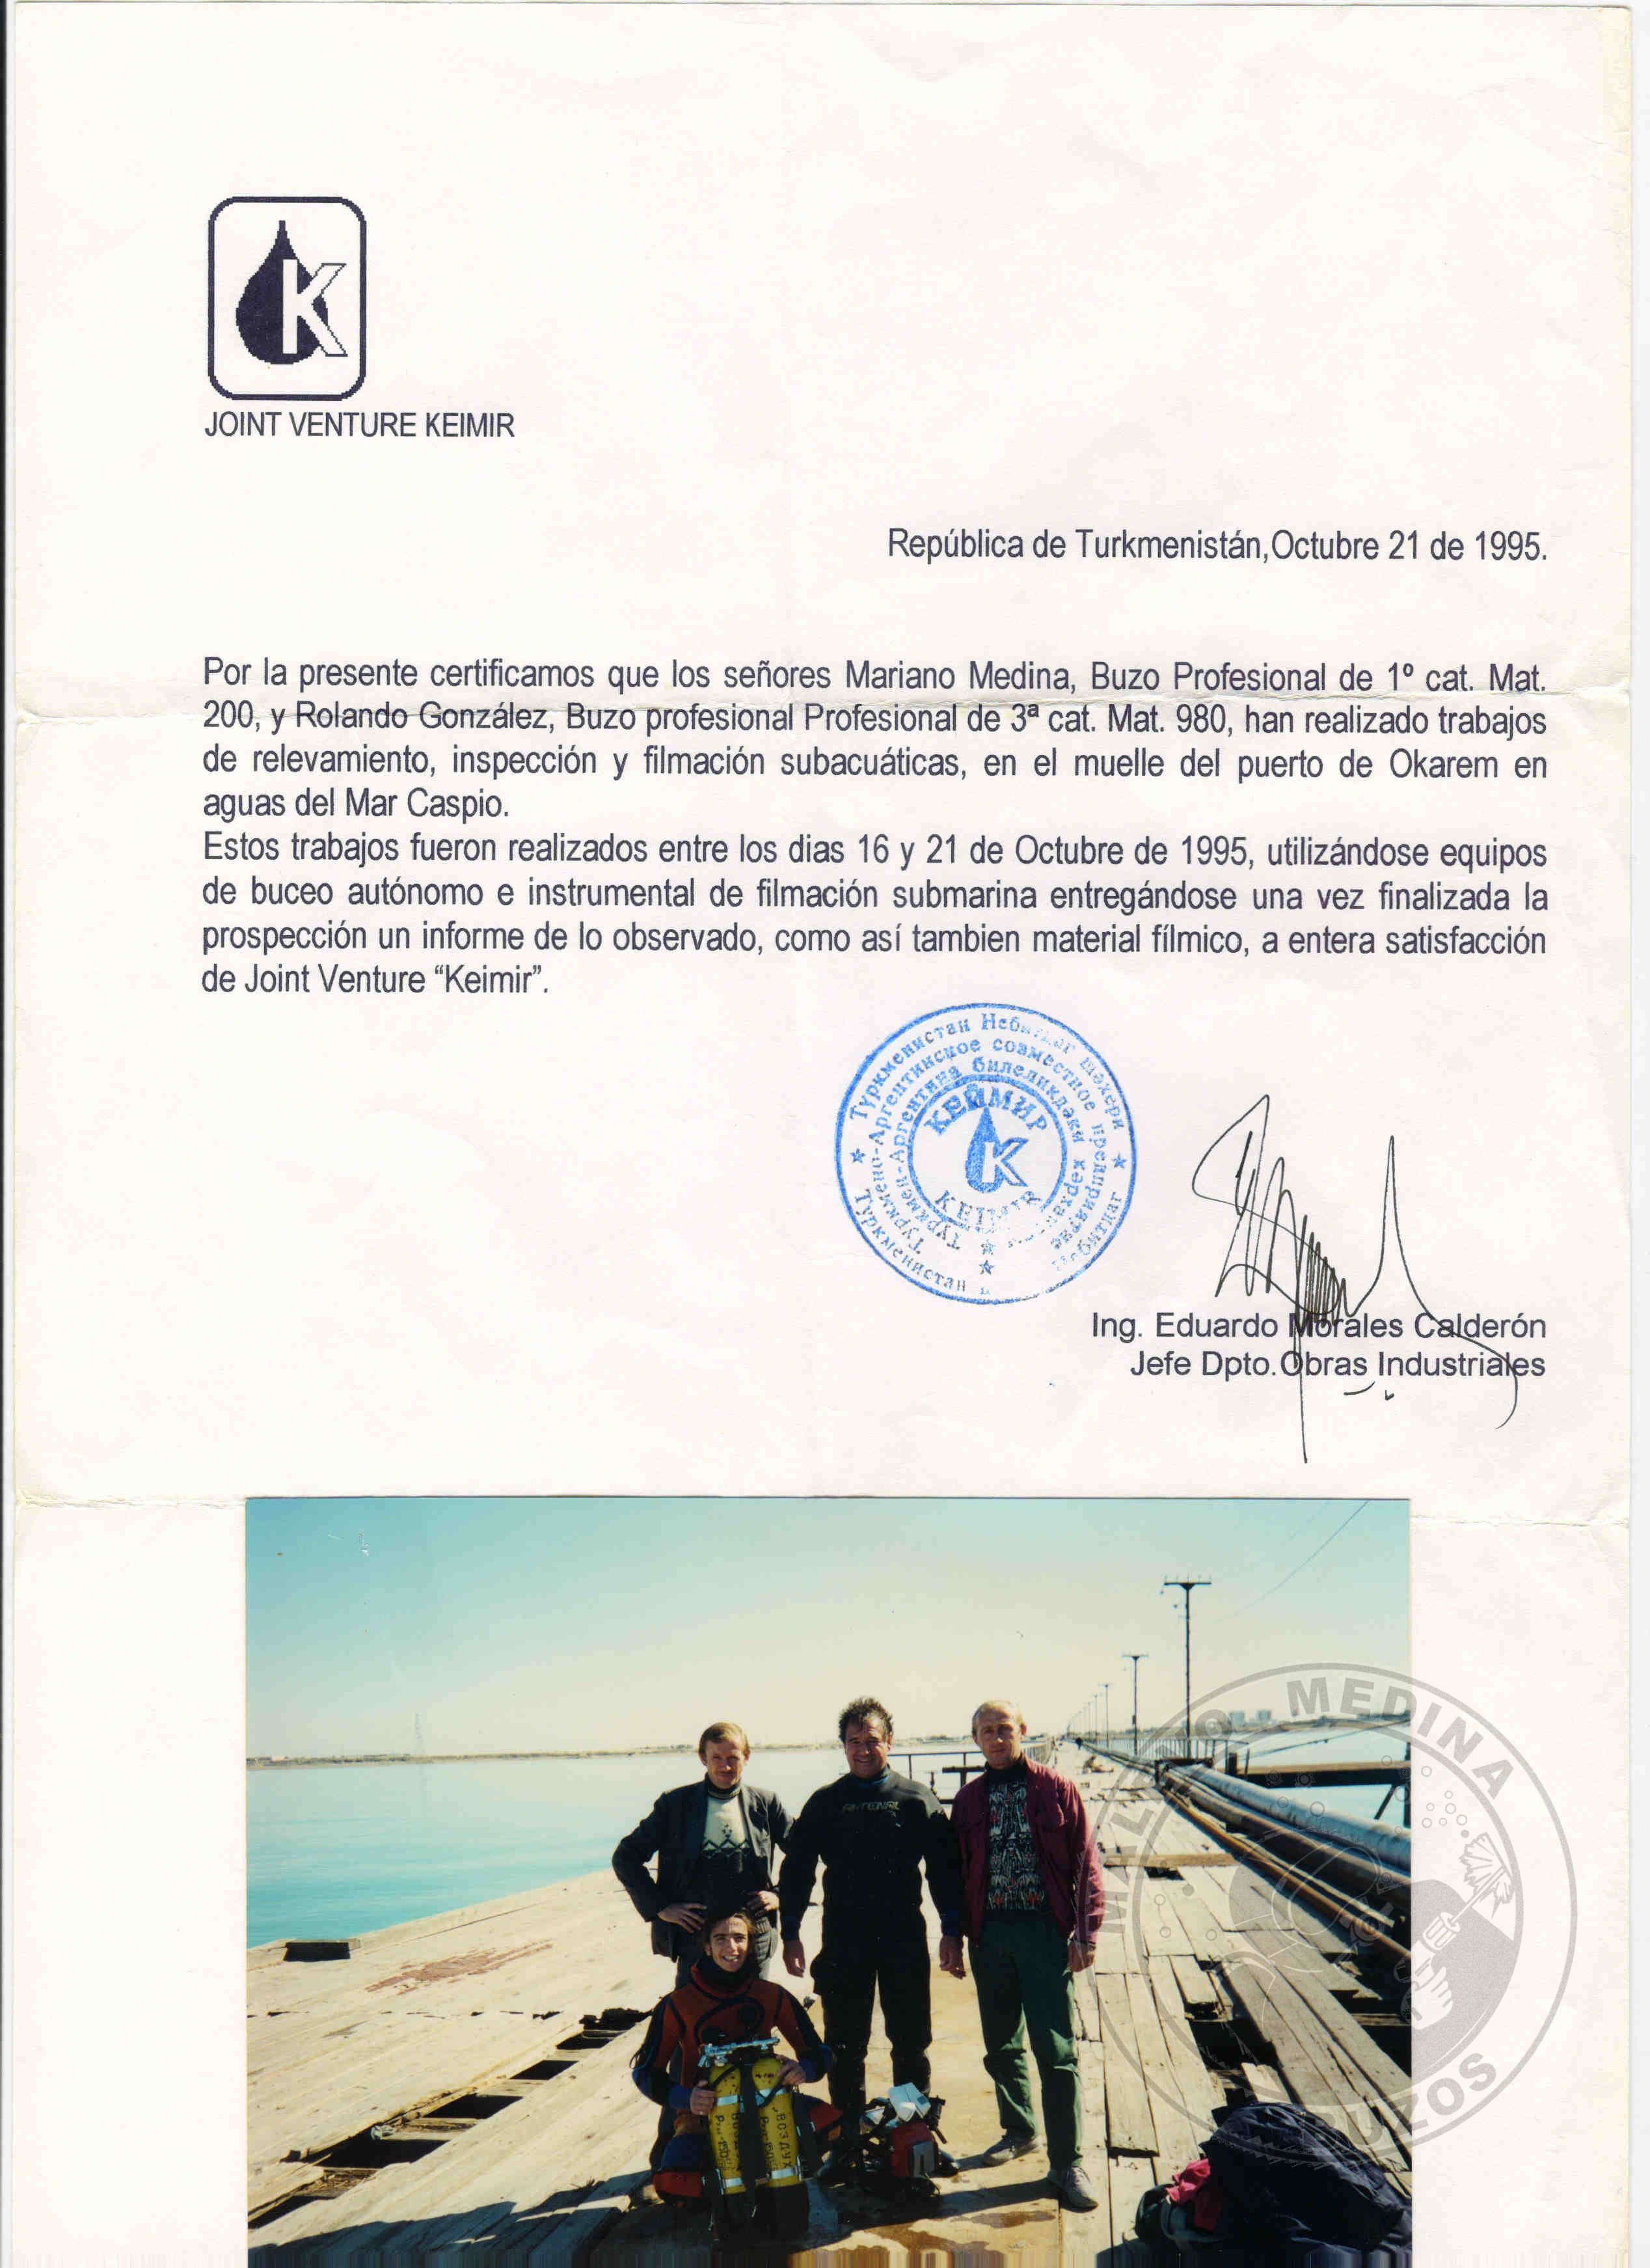 Trabajos realizados en el Puerto de Okarem - Turkmenistan